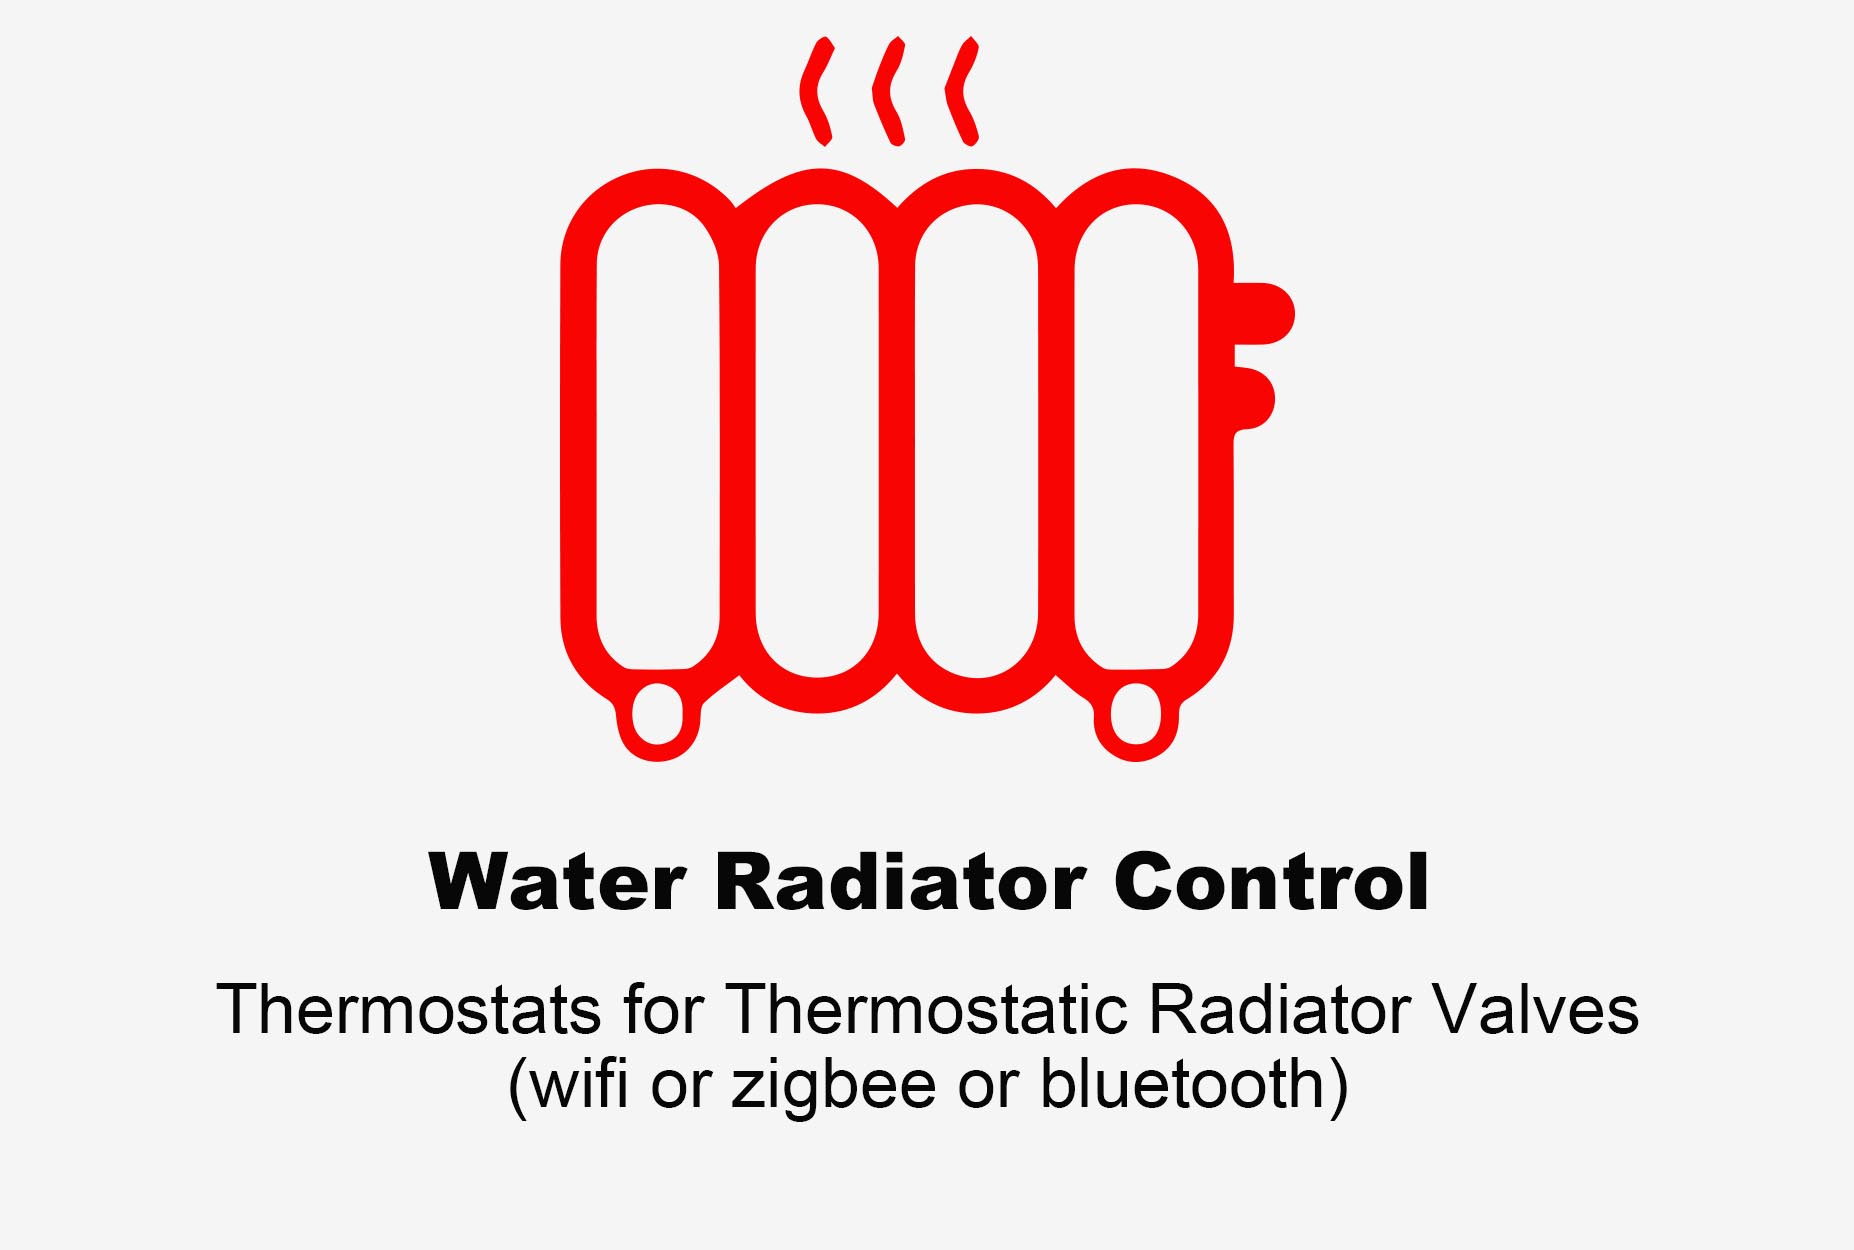 Termostato per radiatore ad acqua, Termostato Bluetooth, Termostato per radiatore Zigbee, Termostato per radiatore Wifi